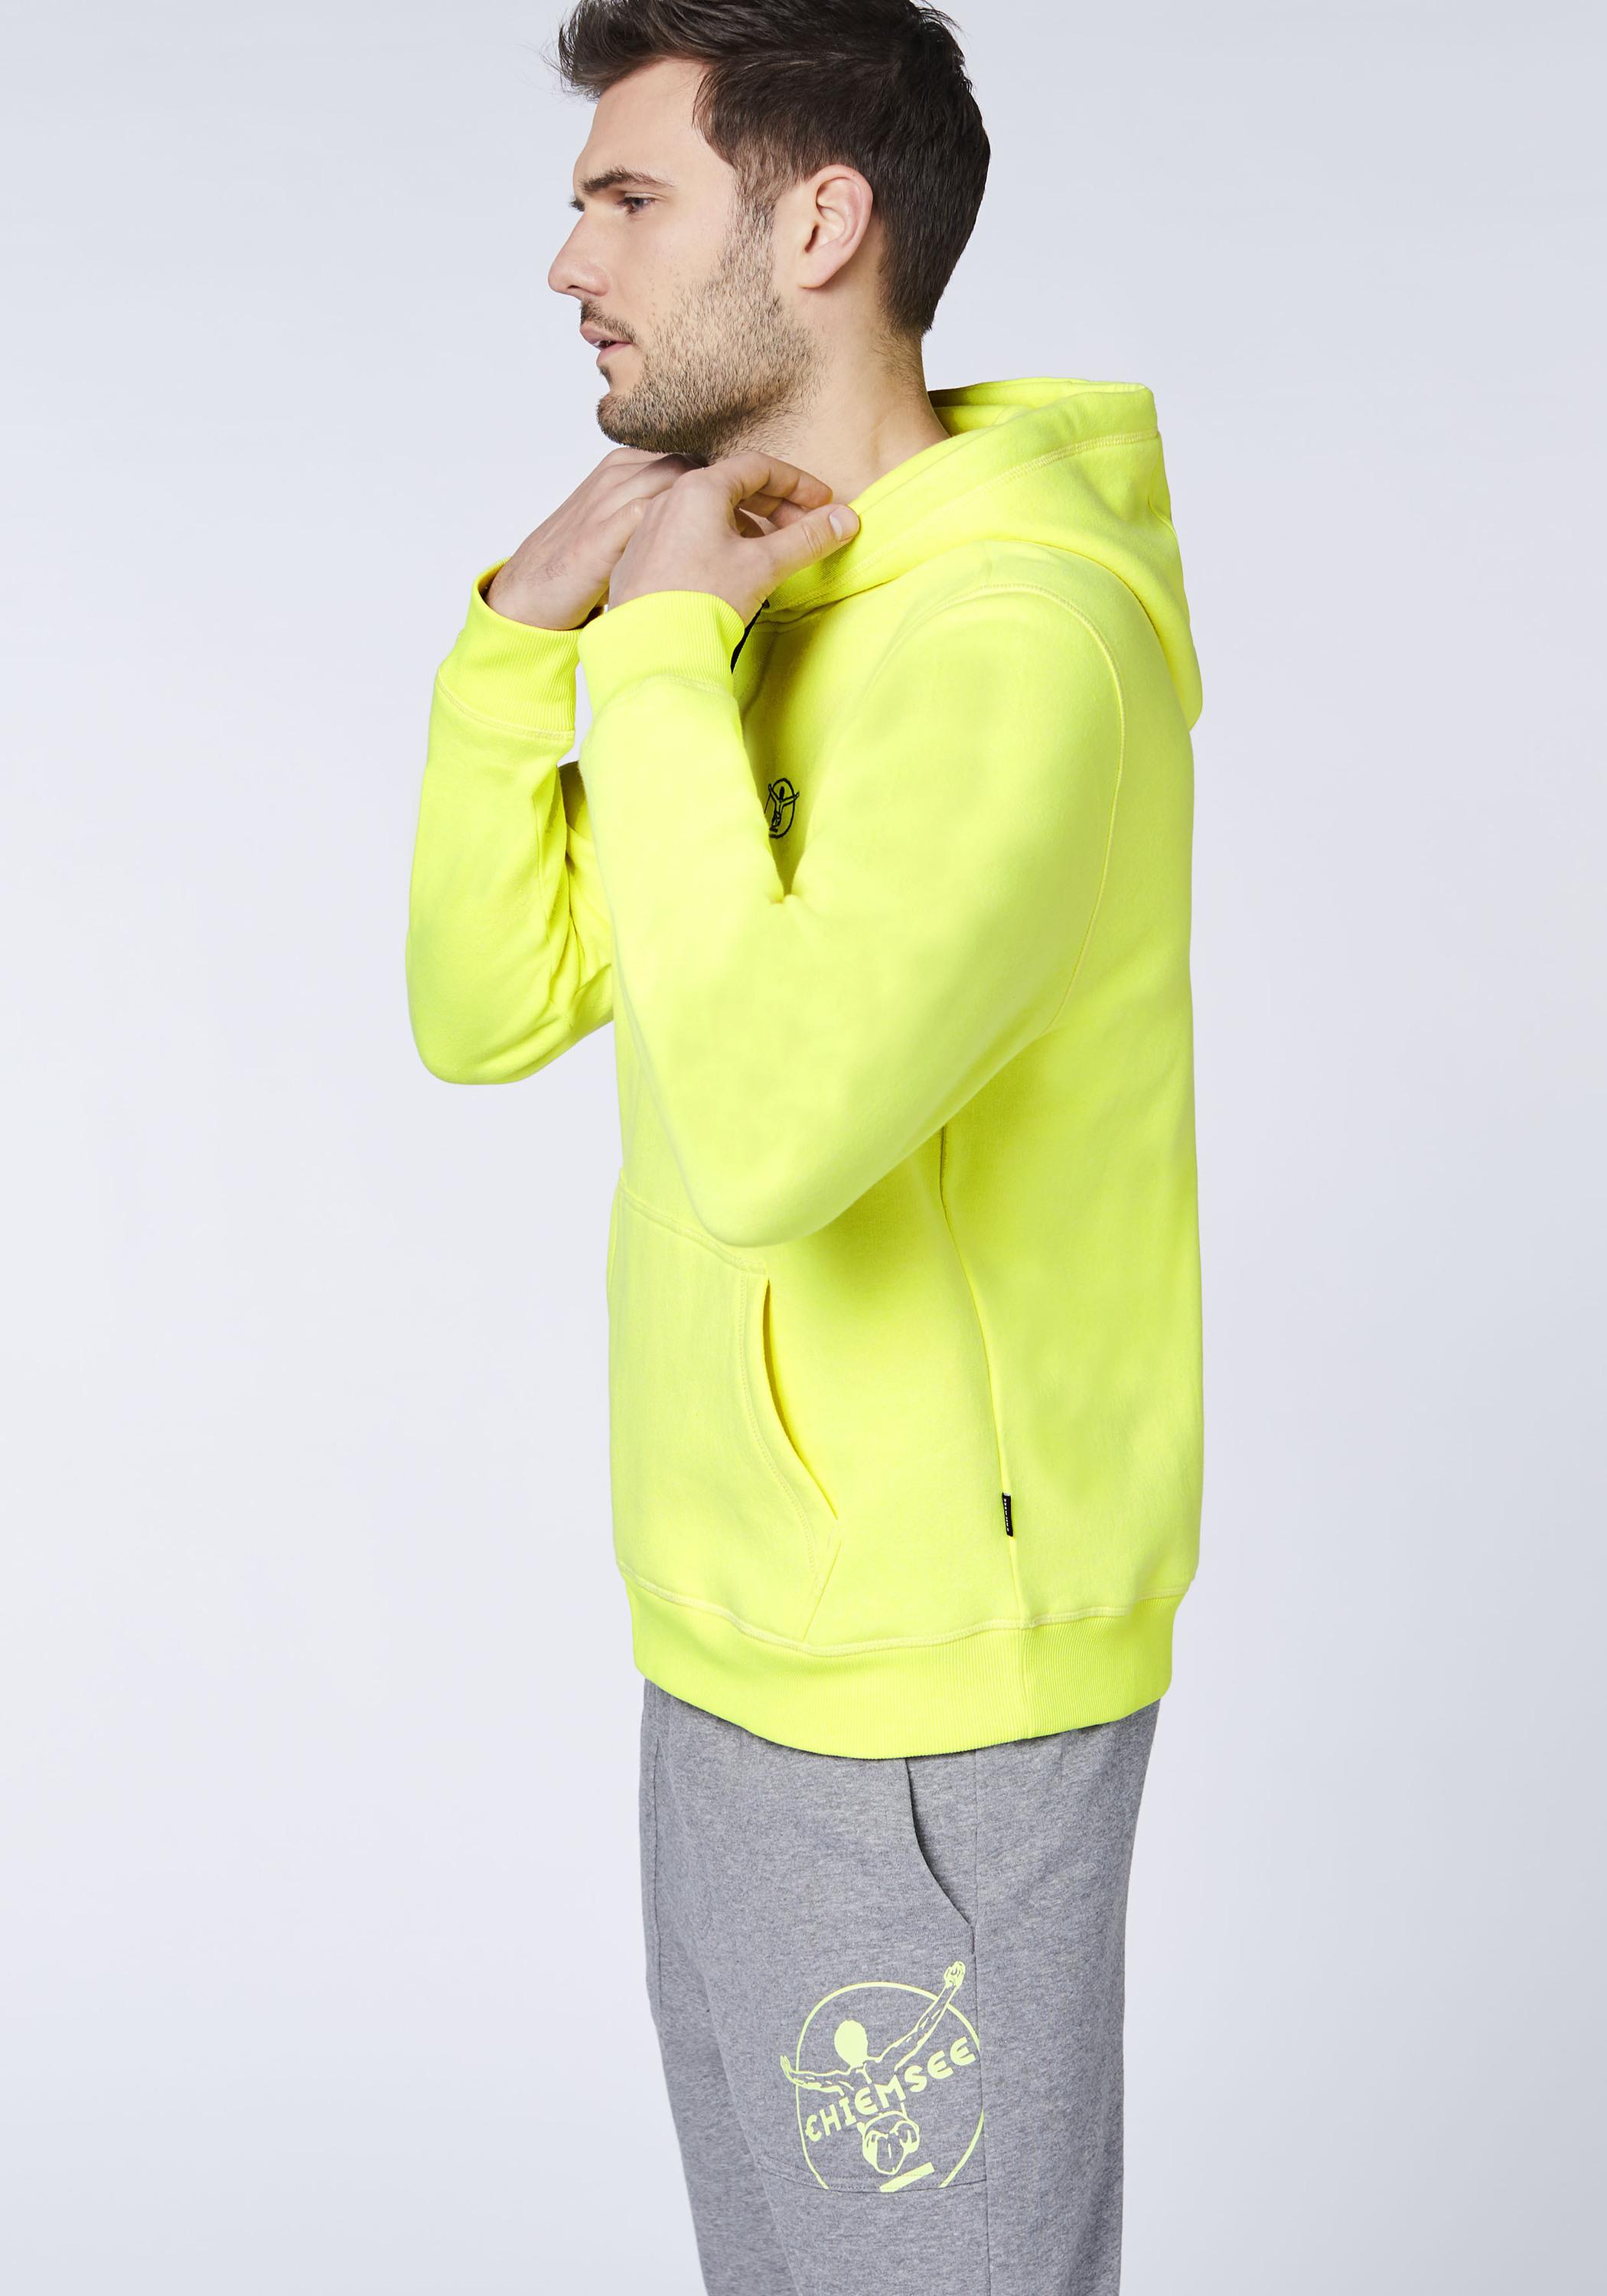 Chiemsee Kapuzensweatshirt Sweatshirt Herren Safety Yellow im Online Shop  von SportScheck kaufen